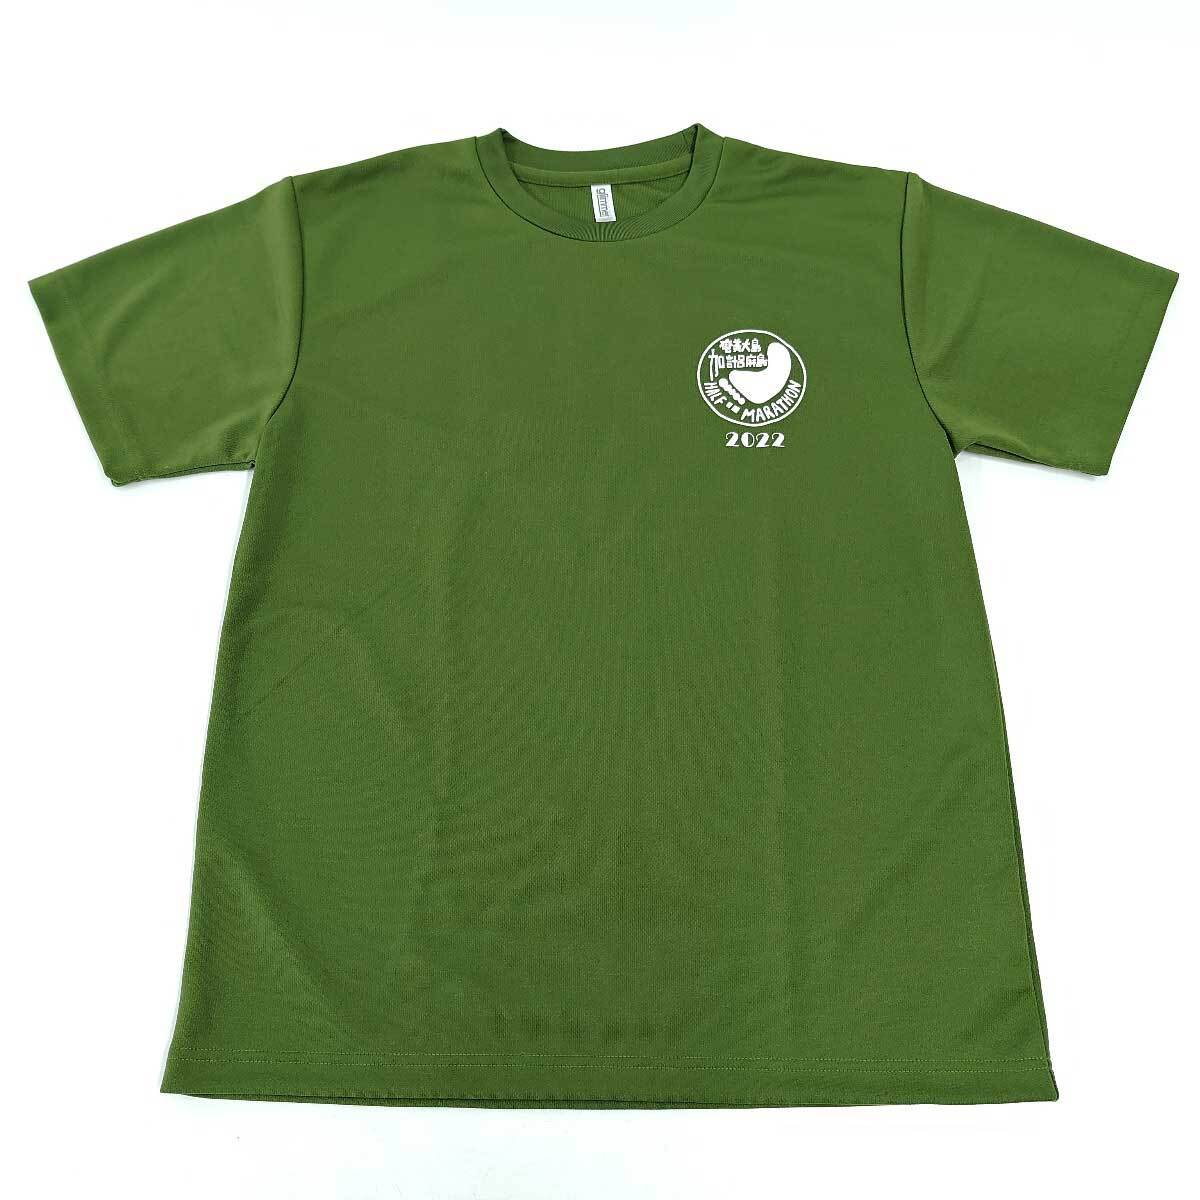 【中古】奄美大島 加計呂麻島 ハーフマラソン 2022 記念 Tシャツ ドライシャツ L グリーン ユニセックス_画像1